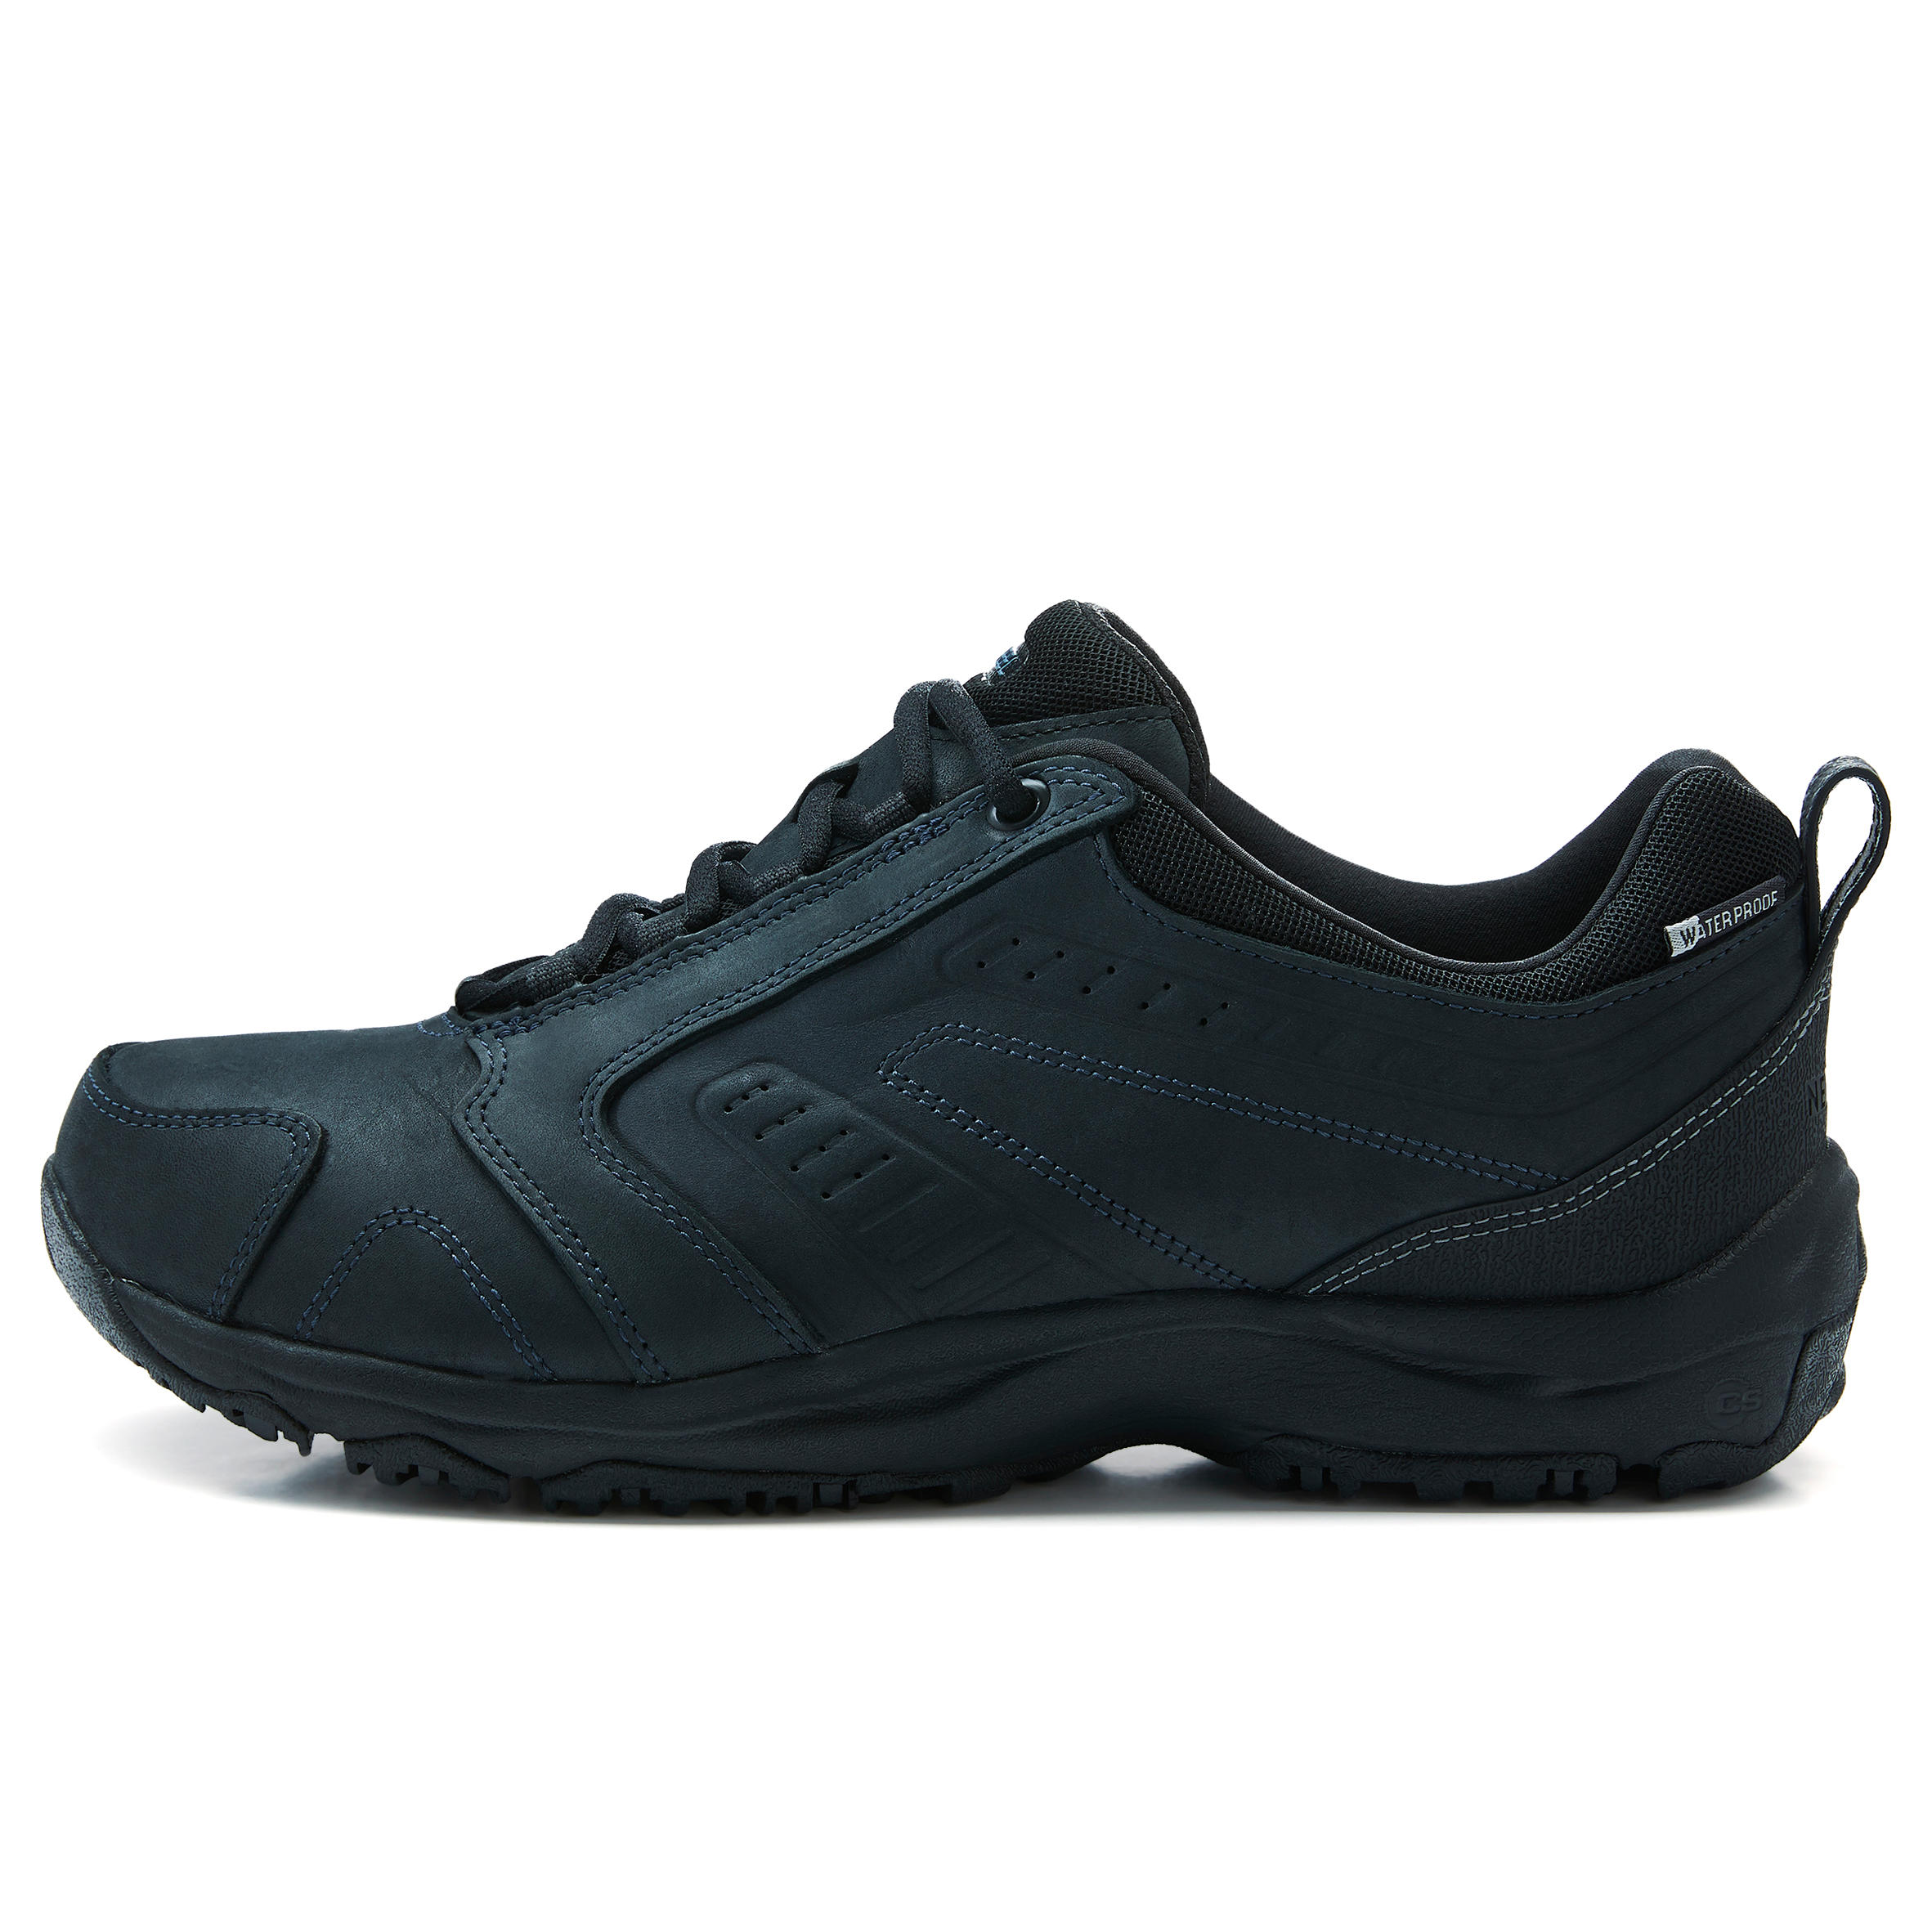 Nakuru Waterproof Men's Urban Waterproof Walking Shoes - Black Leather 20/25